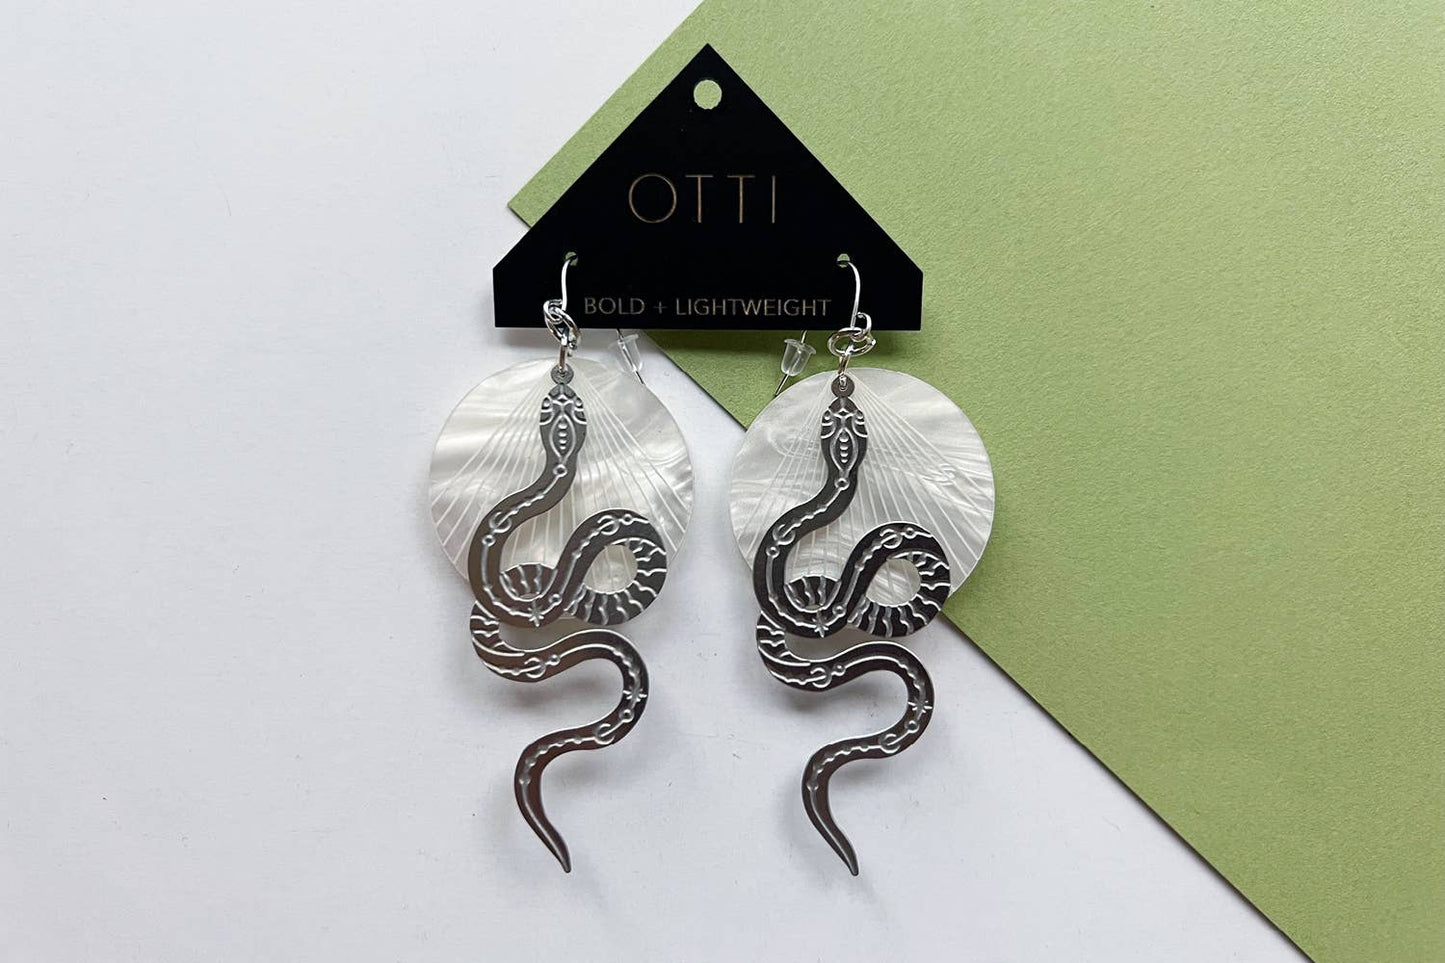 Otti Silver Snake Earrings: Solid